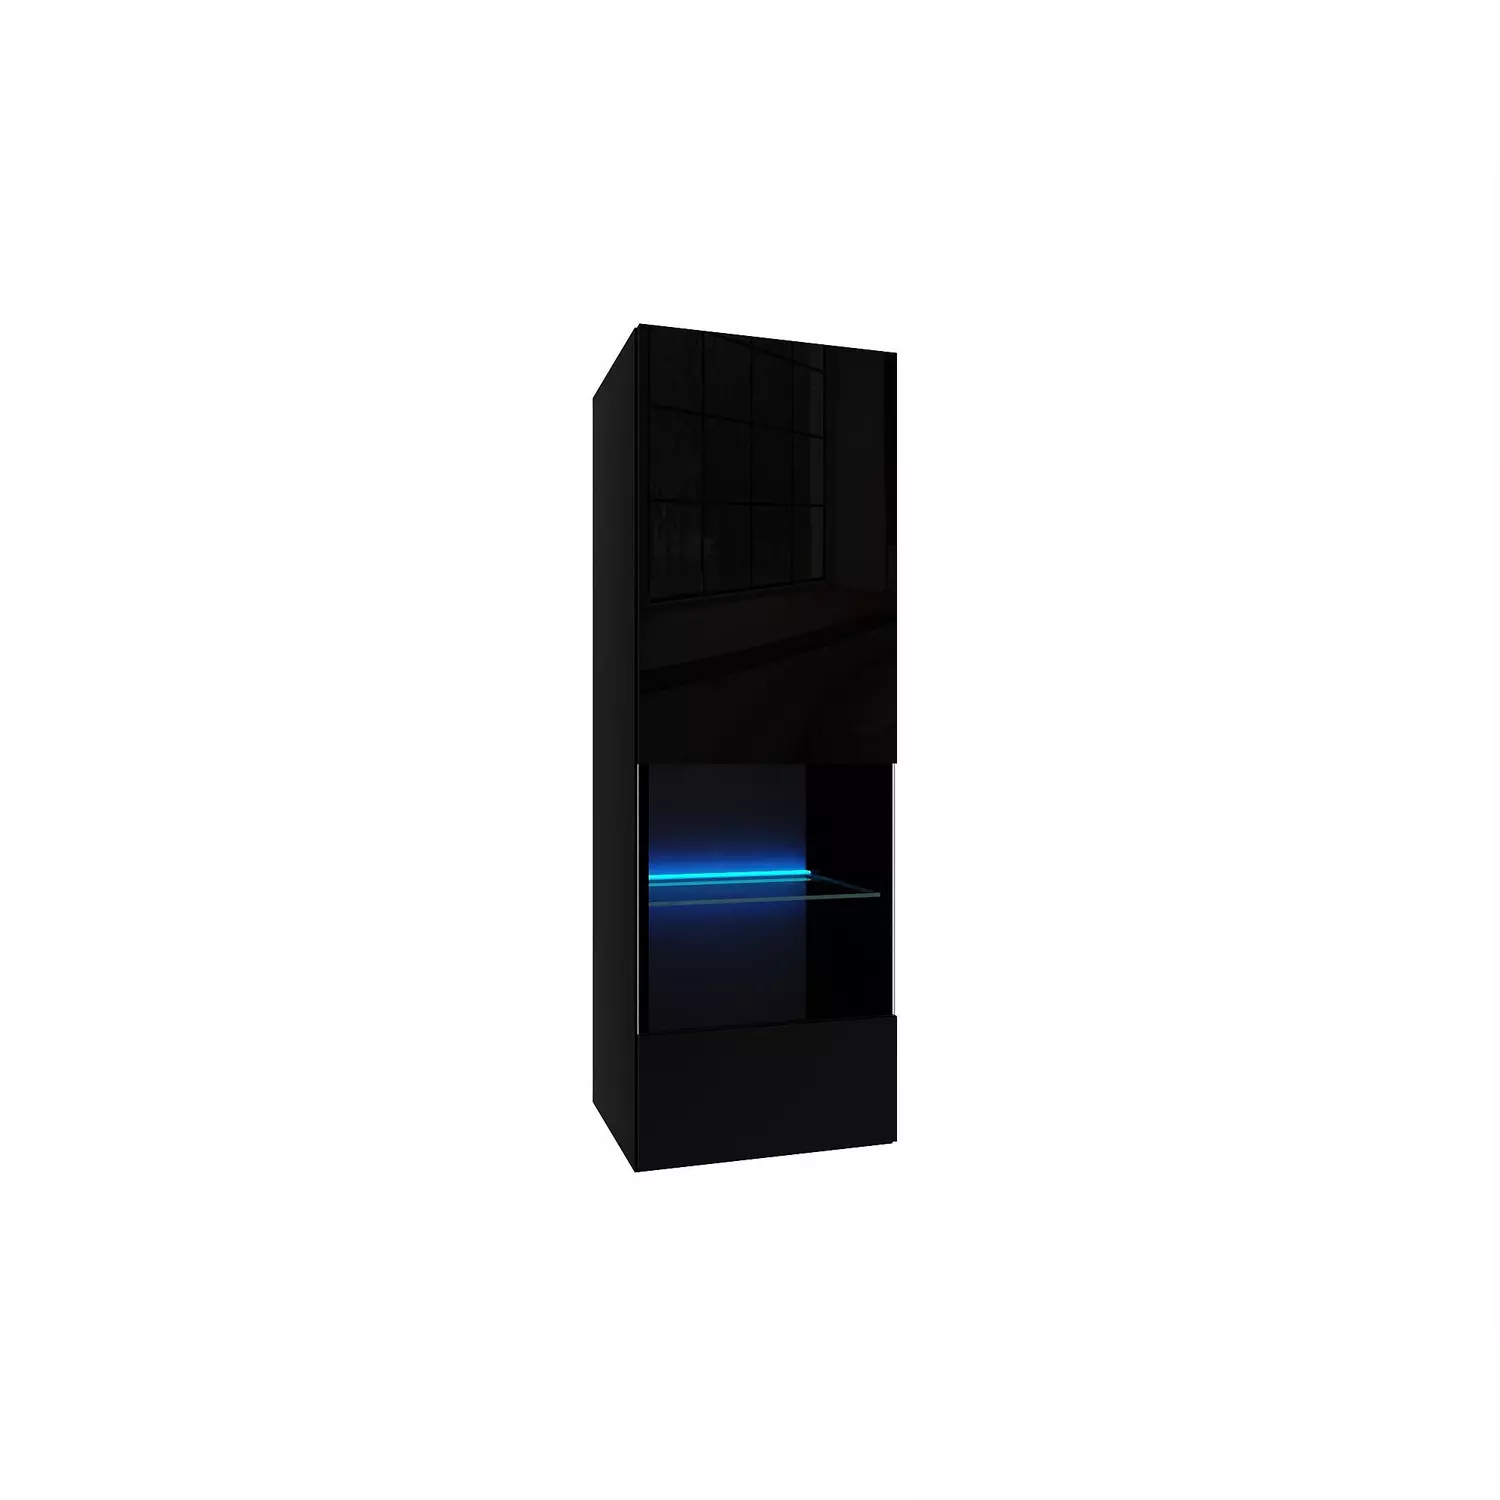 IZUMI 2 magasfényű fekete/fekete polcos, vitrines függesztett fali szekrény, 105 BL